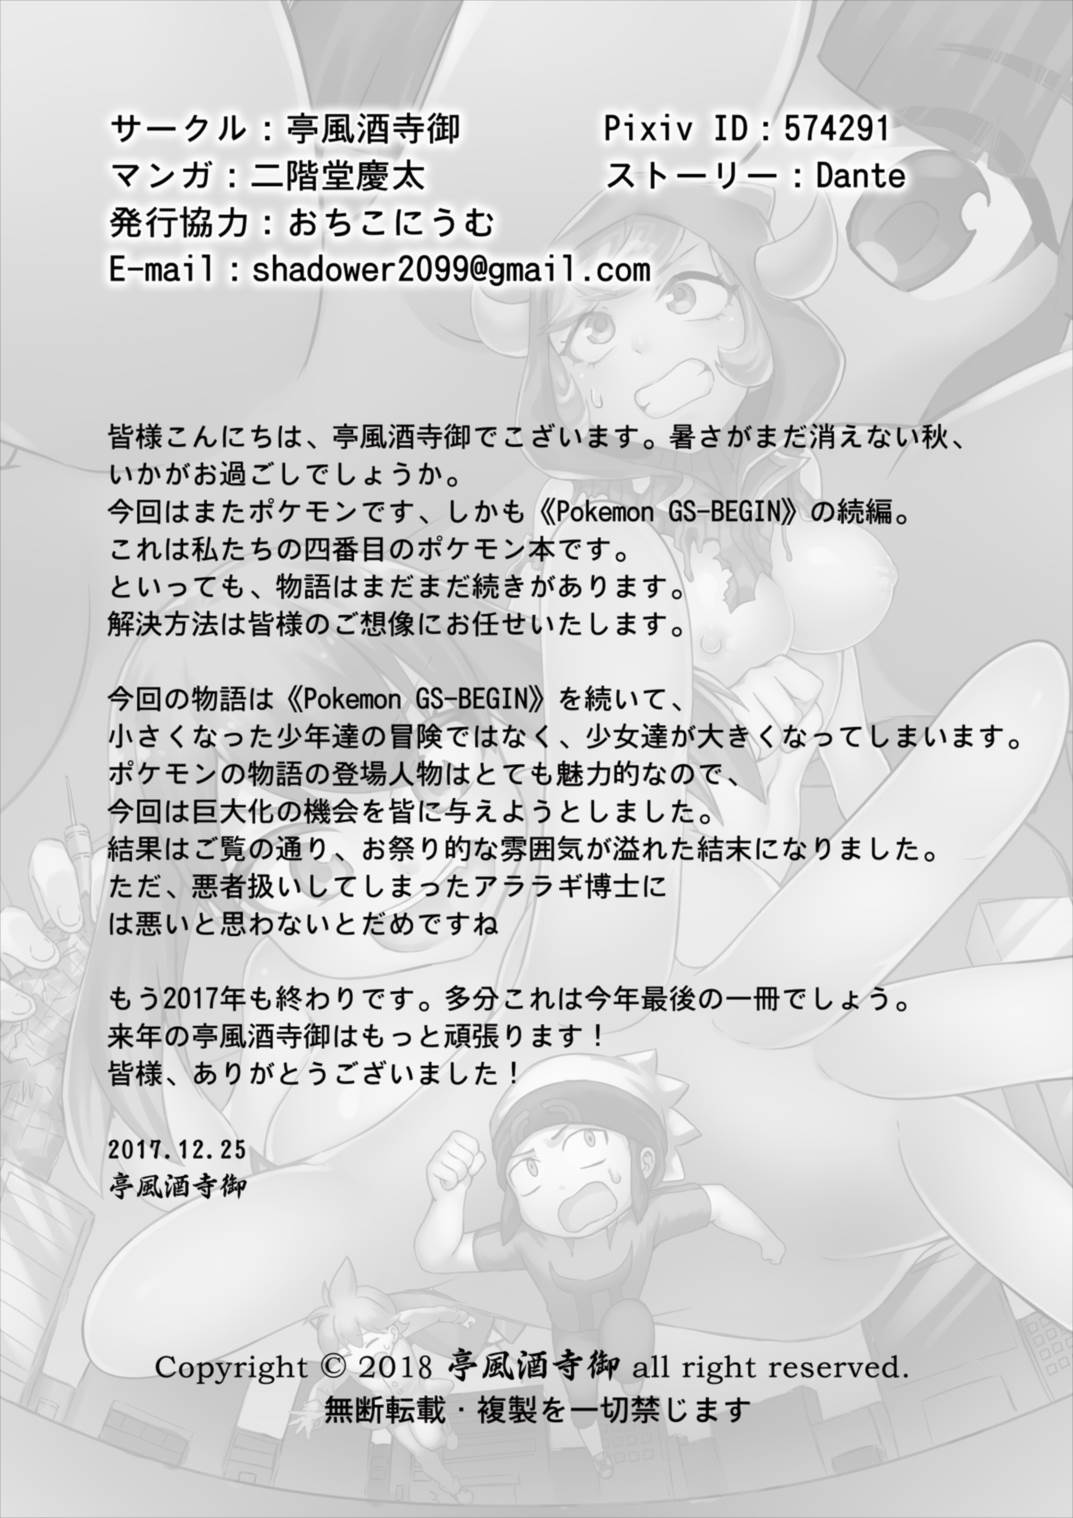 [亭風酒寺御 (二階堂慶太)] Pokemon GS -To Be continued!?- (ポケットモンスター オメガルビー・アルファサファイア)